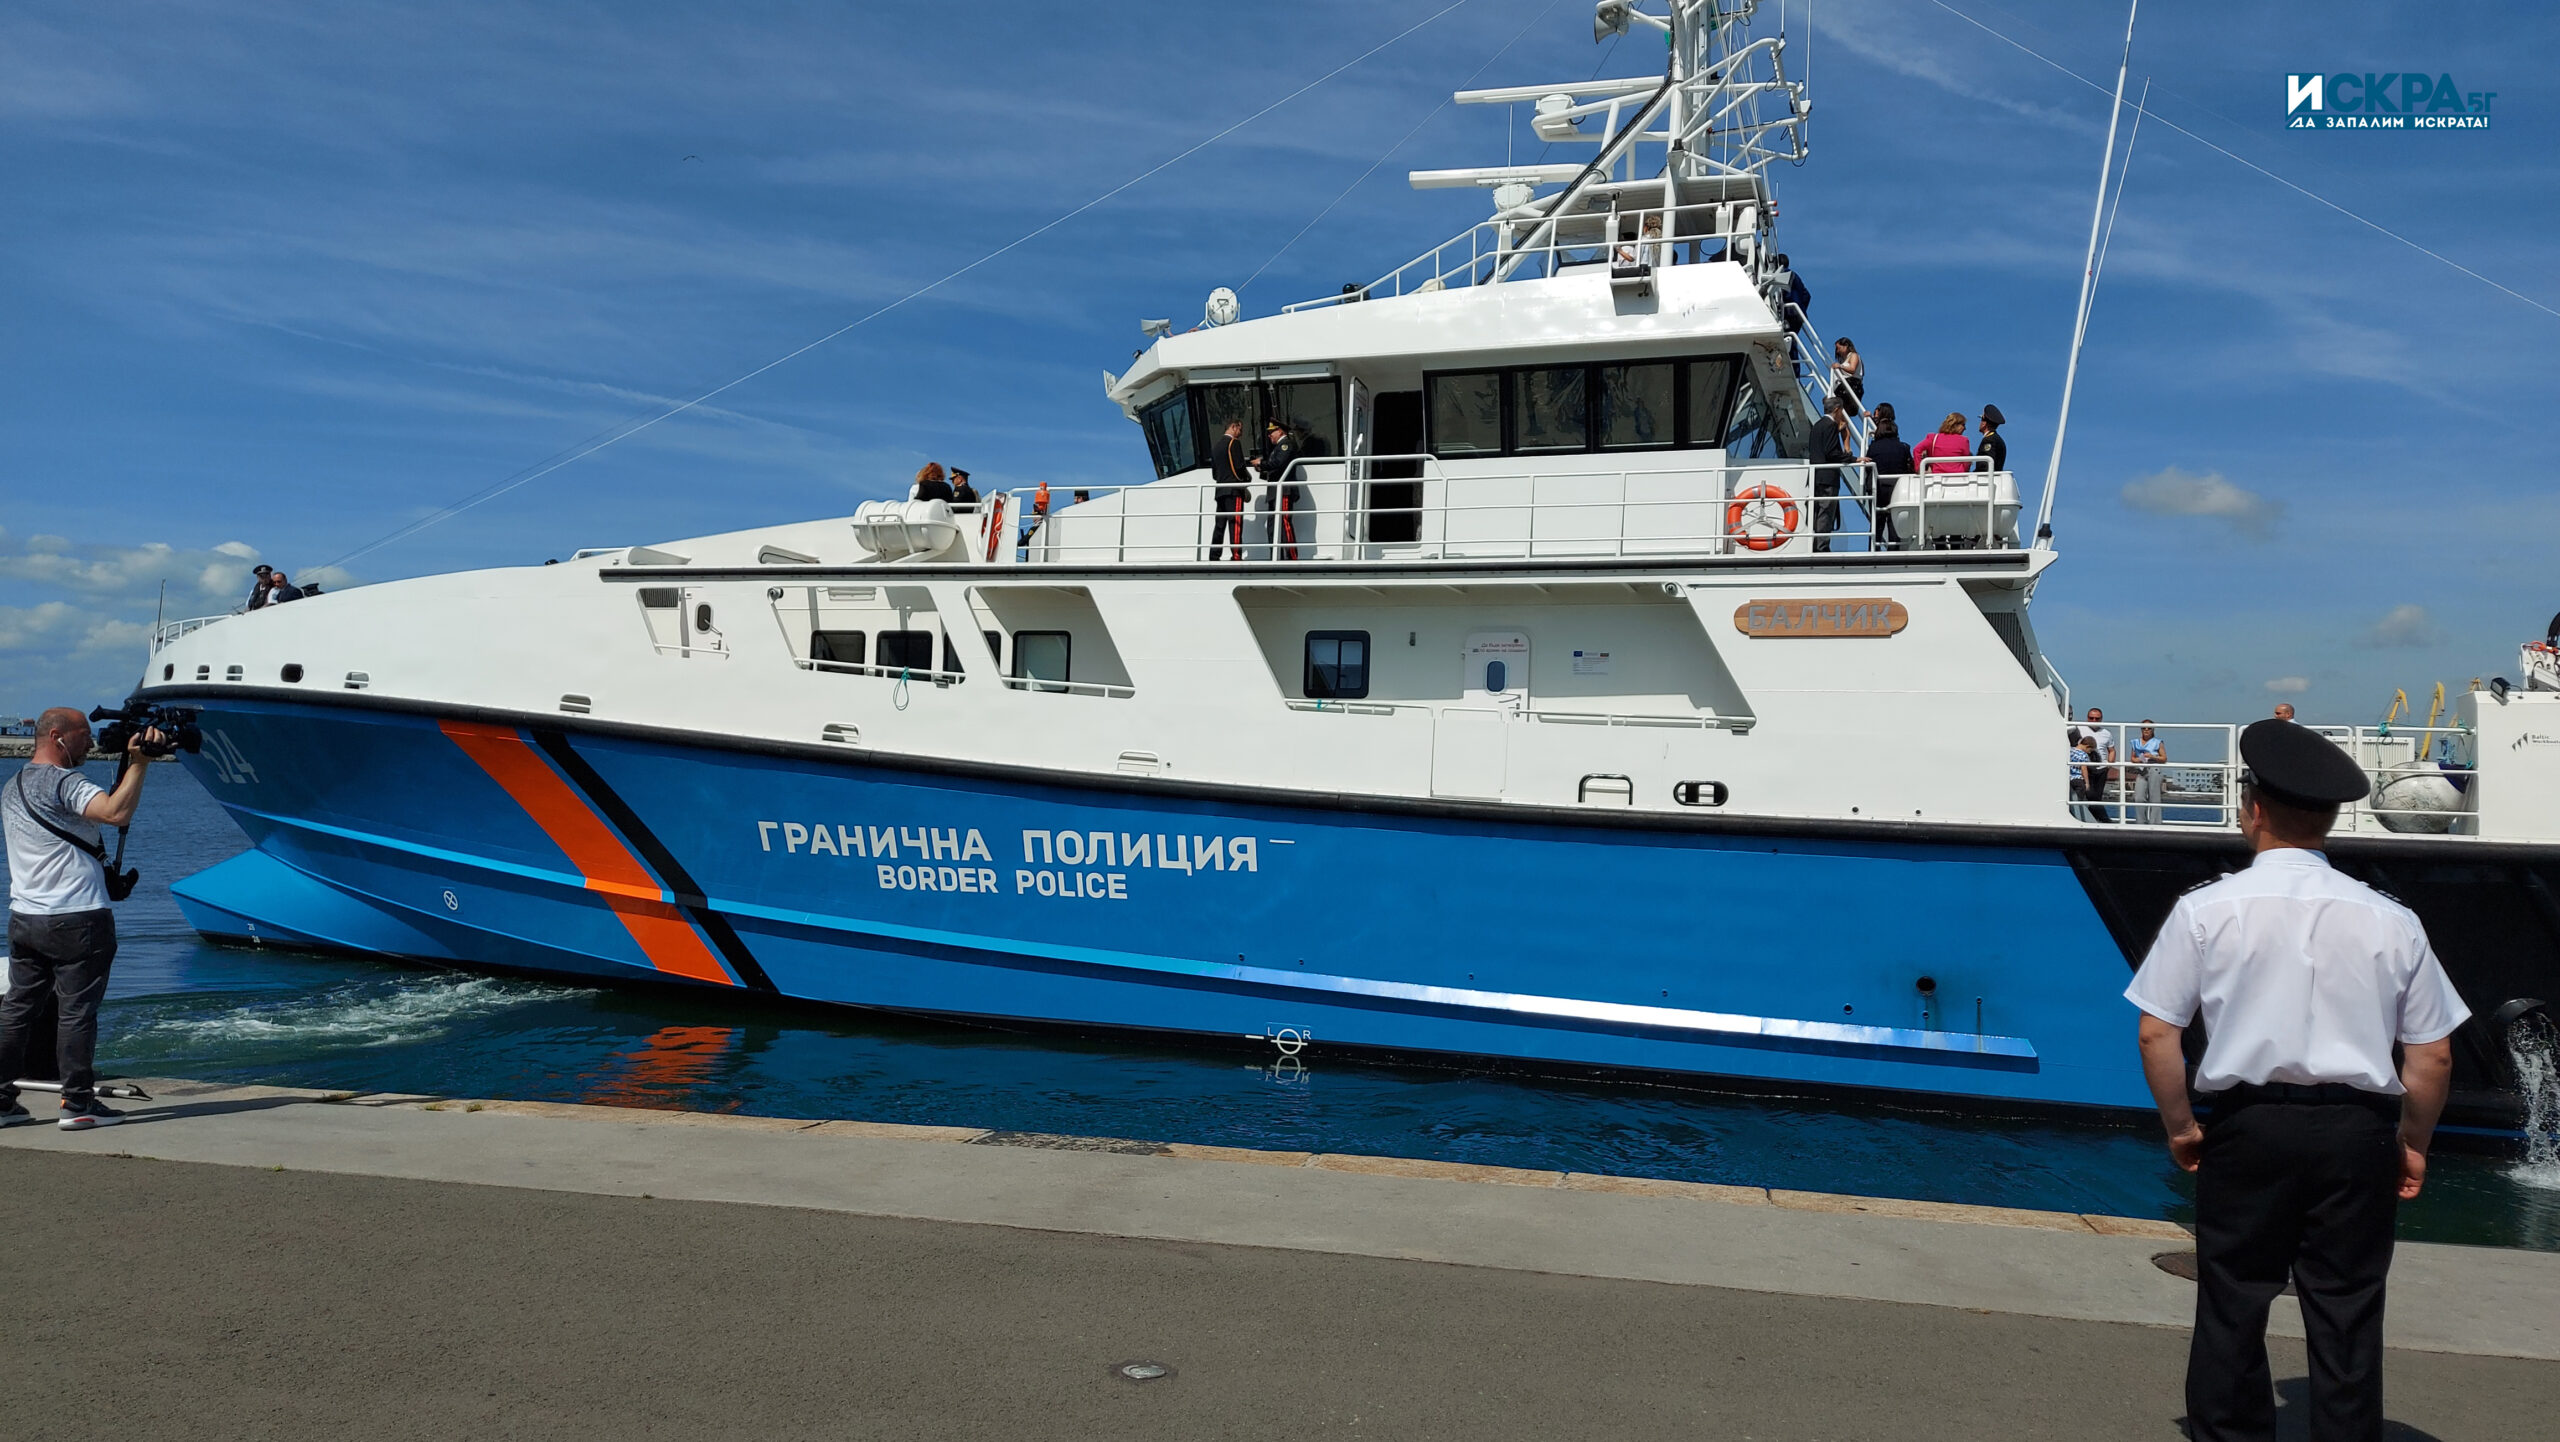 Граничен кораб – Балчик Снимка Искра бг
Новият вътрешен министър Калин Стоянов